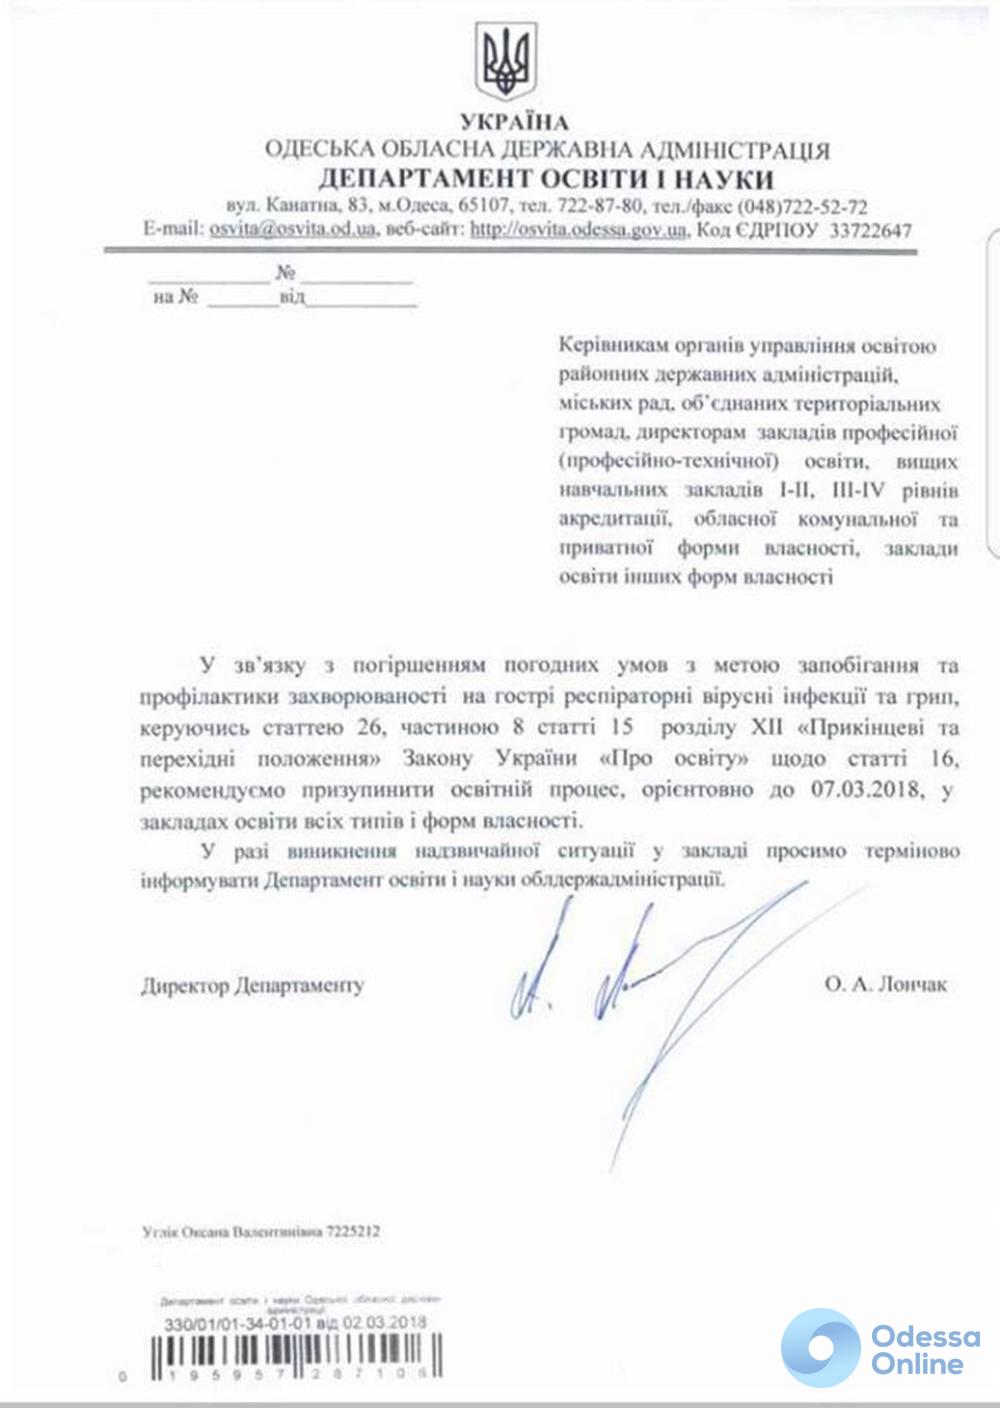 Одесские вузы, школы и детсады закрыли до 7 марта (документ)